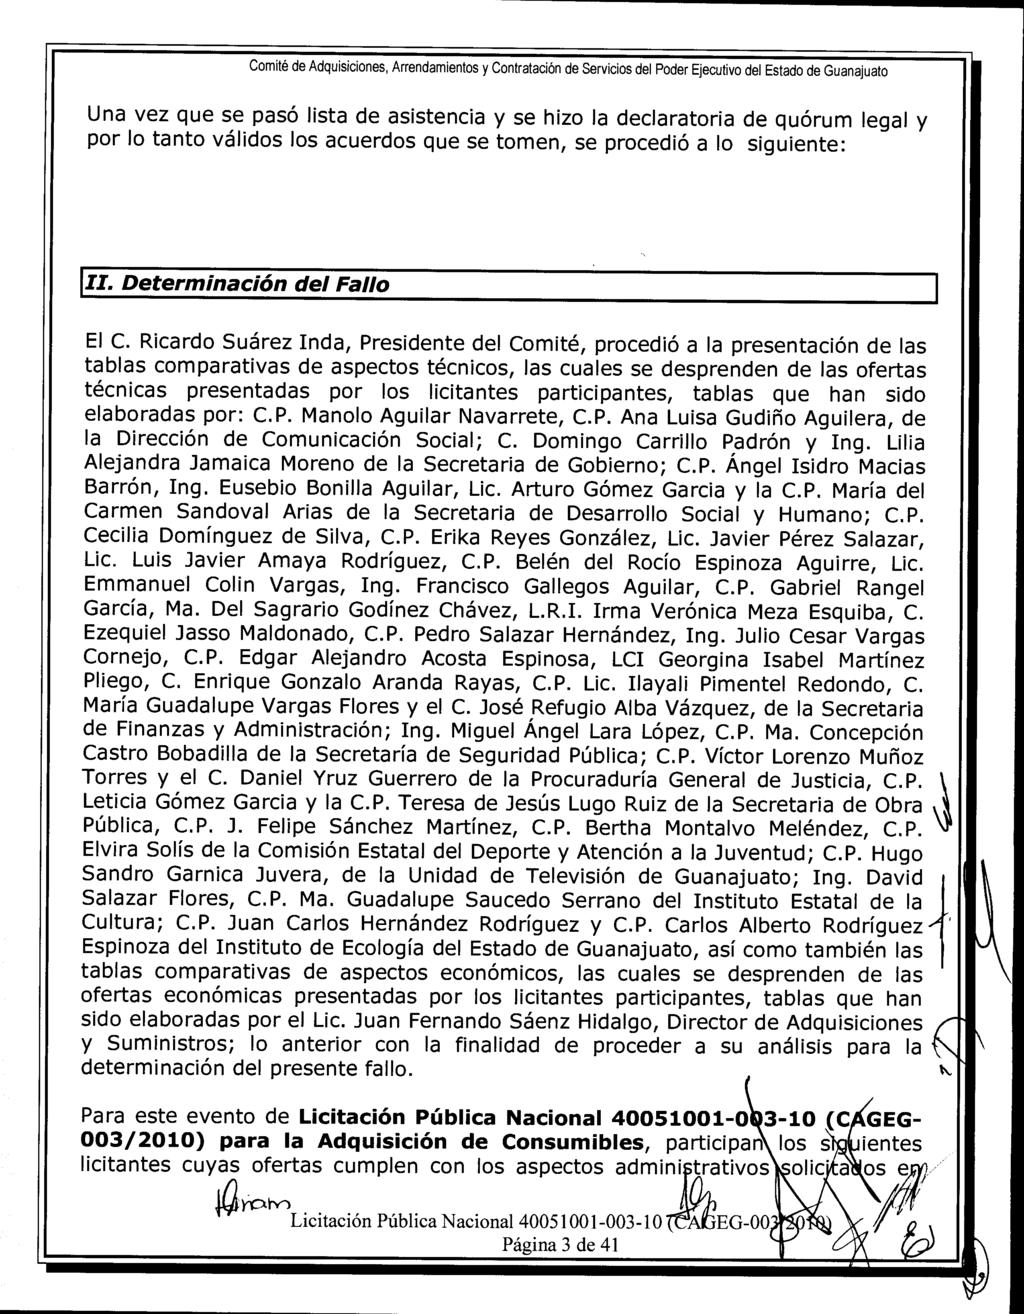 Comité de Adquisiciones, Arrendamientos y Contratación de Servicios del Poder Ejecutivo del Estado de Guanajuato Una vez que se pasó lista de asistencia y se hizo la declaratoria de quórum legal y